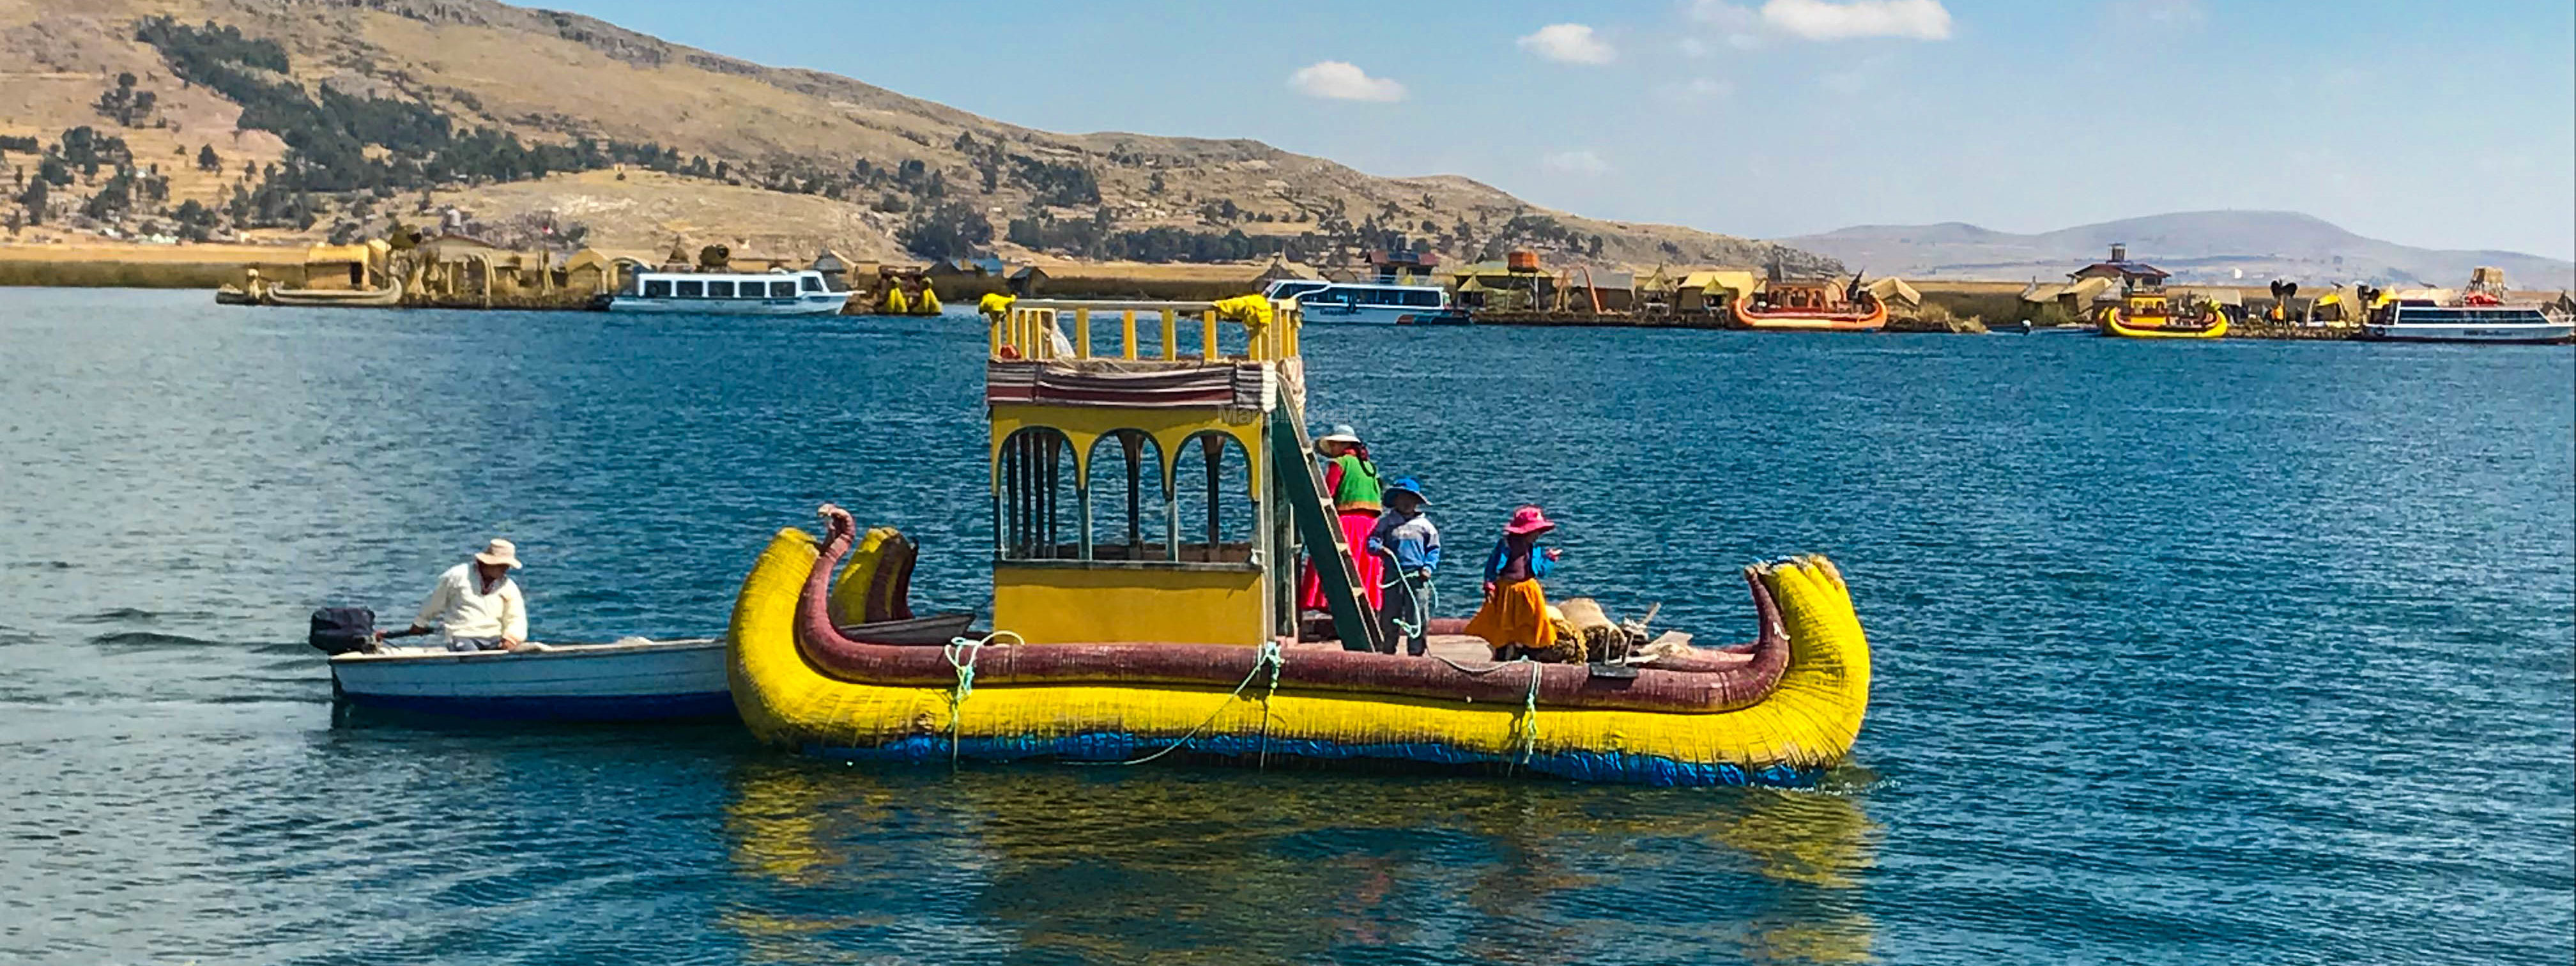 Perù: il leggendario Lago Titicaca e le sue Isole Fluttuanti